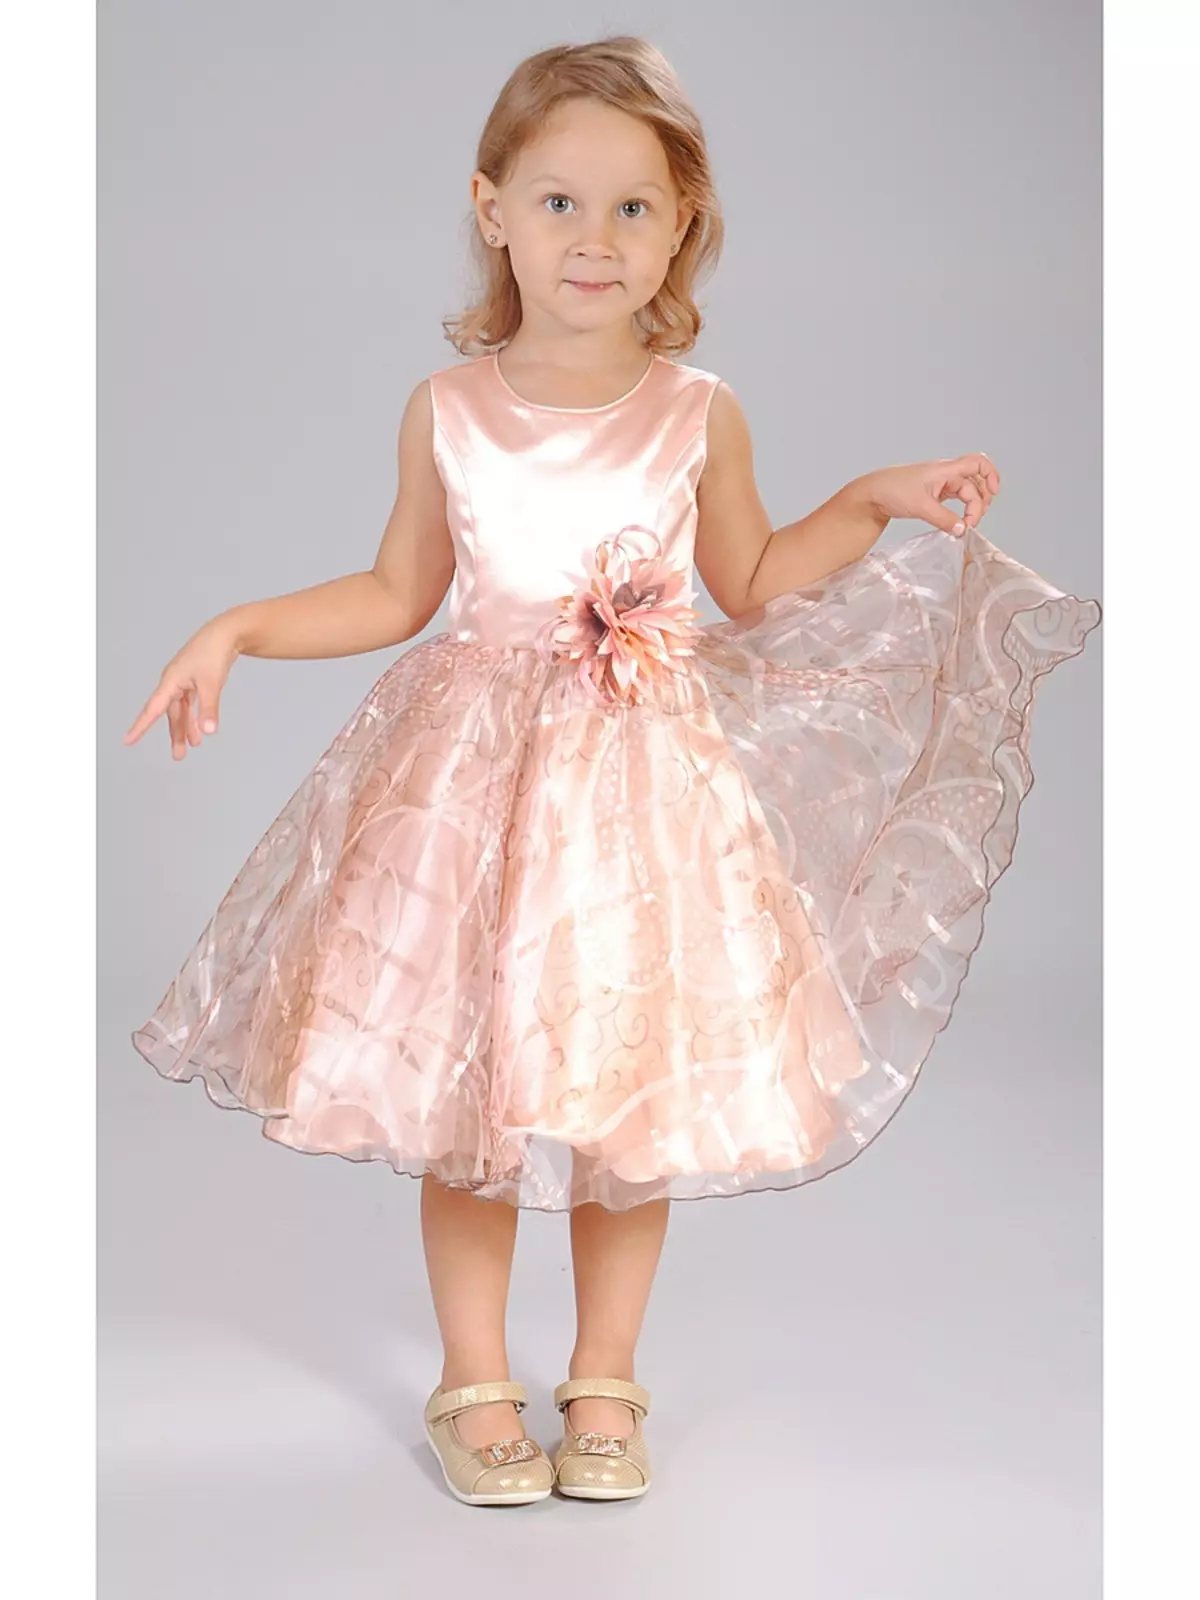 Cutie Susie (52 Fotos): Schuluniform, Kleider, Kostüme und andere Kinderbekleidung für Mädchen 7 Jahre, Produktbewertungen 3792_26